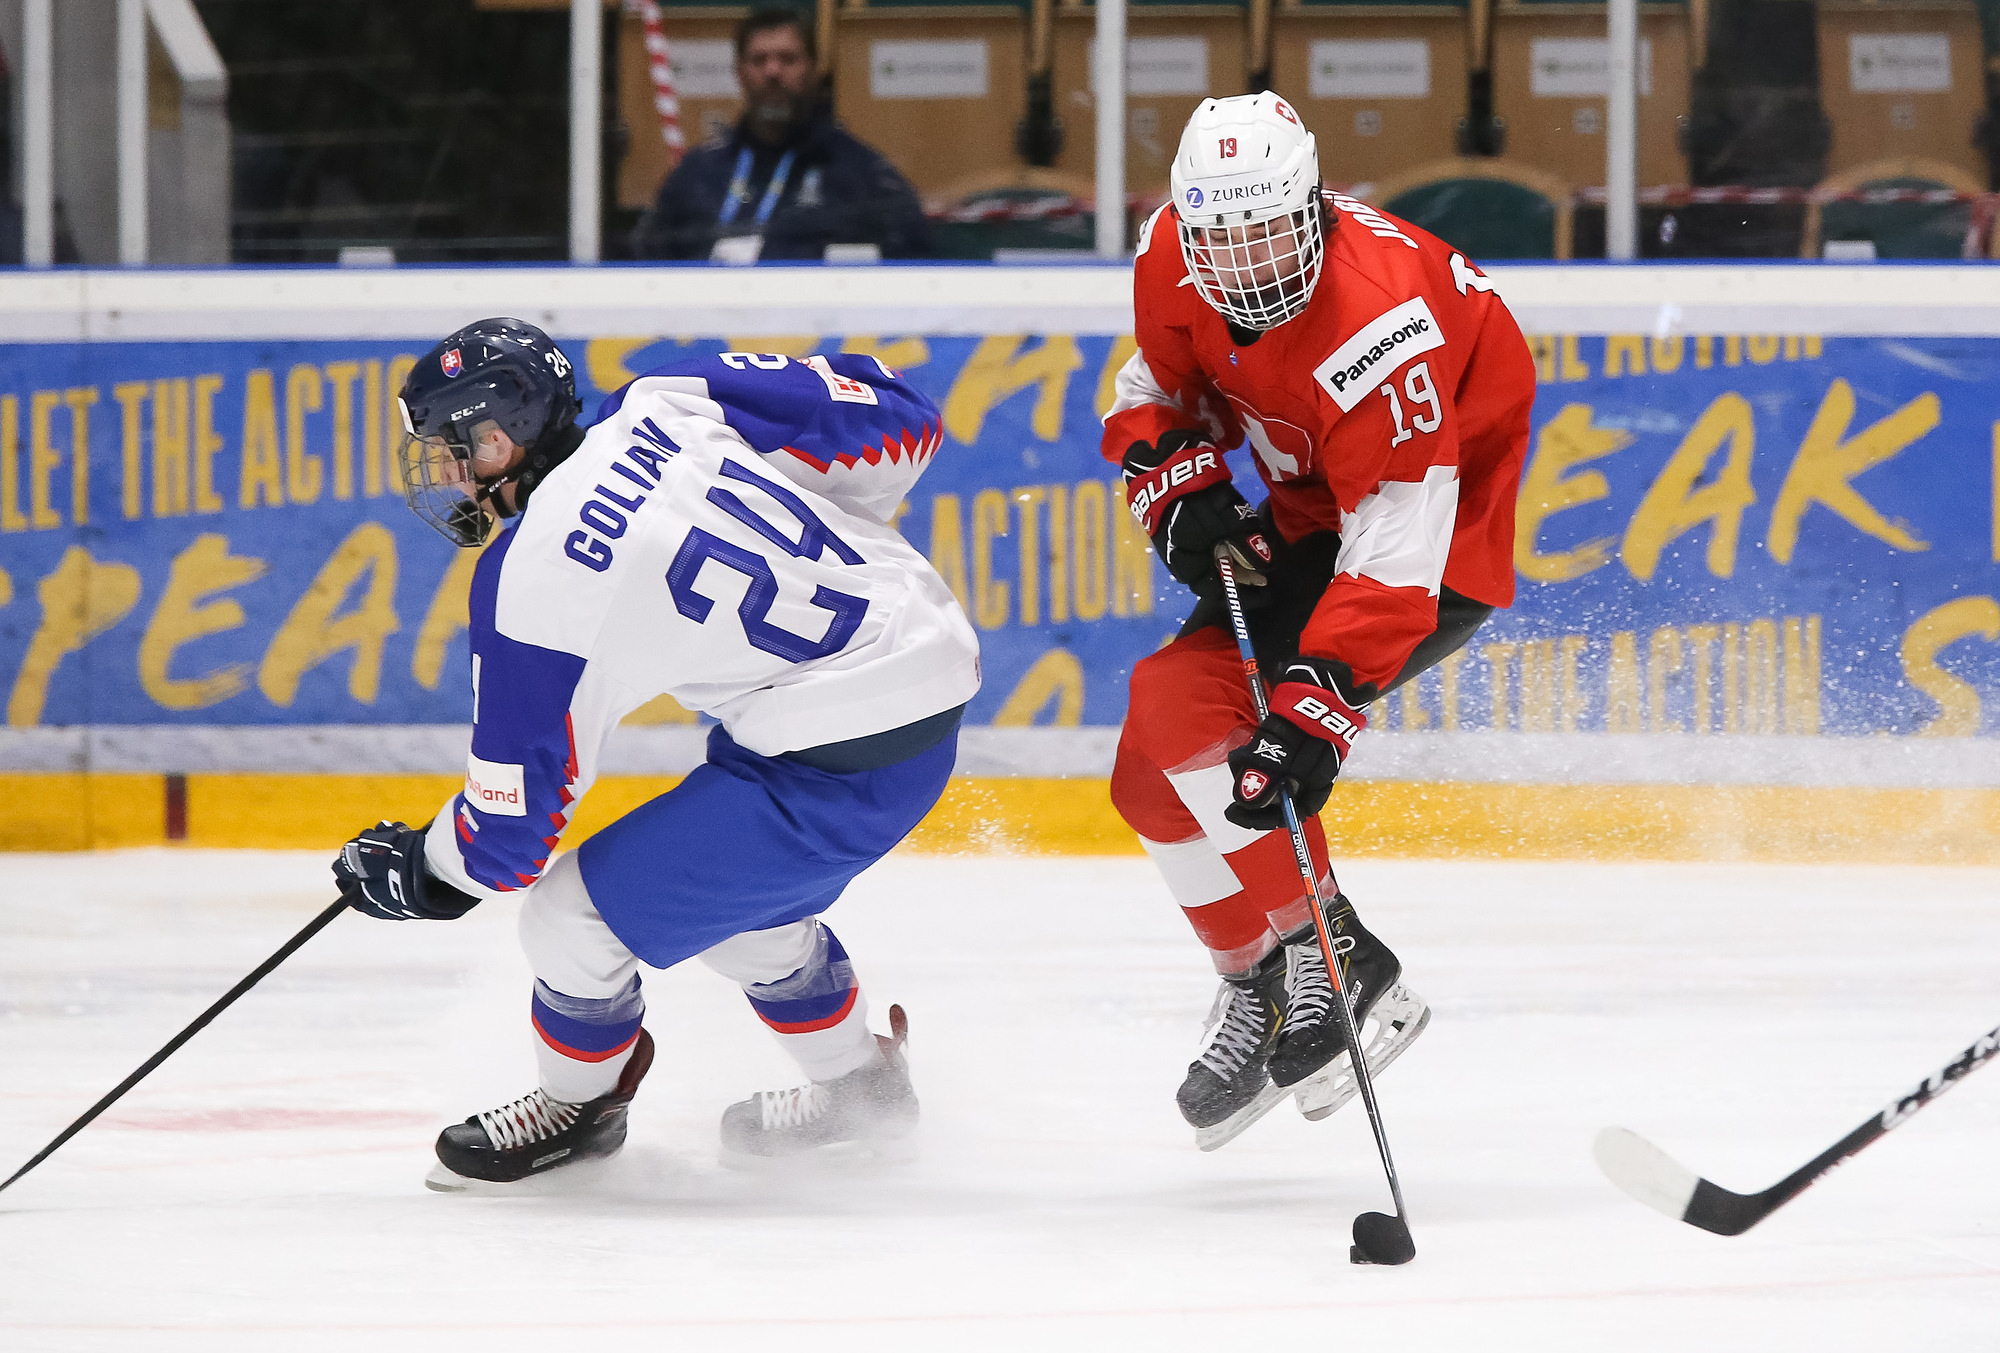 IIHF - Gallery: Switzerland vs. Slovakia (R1) - 2019 IIHF Ice Hockey ...